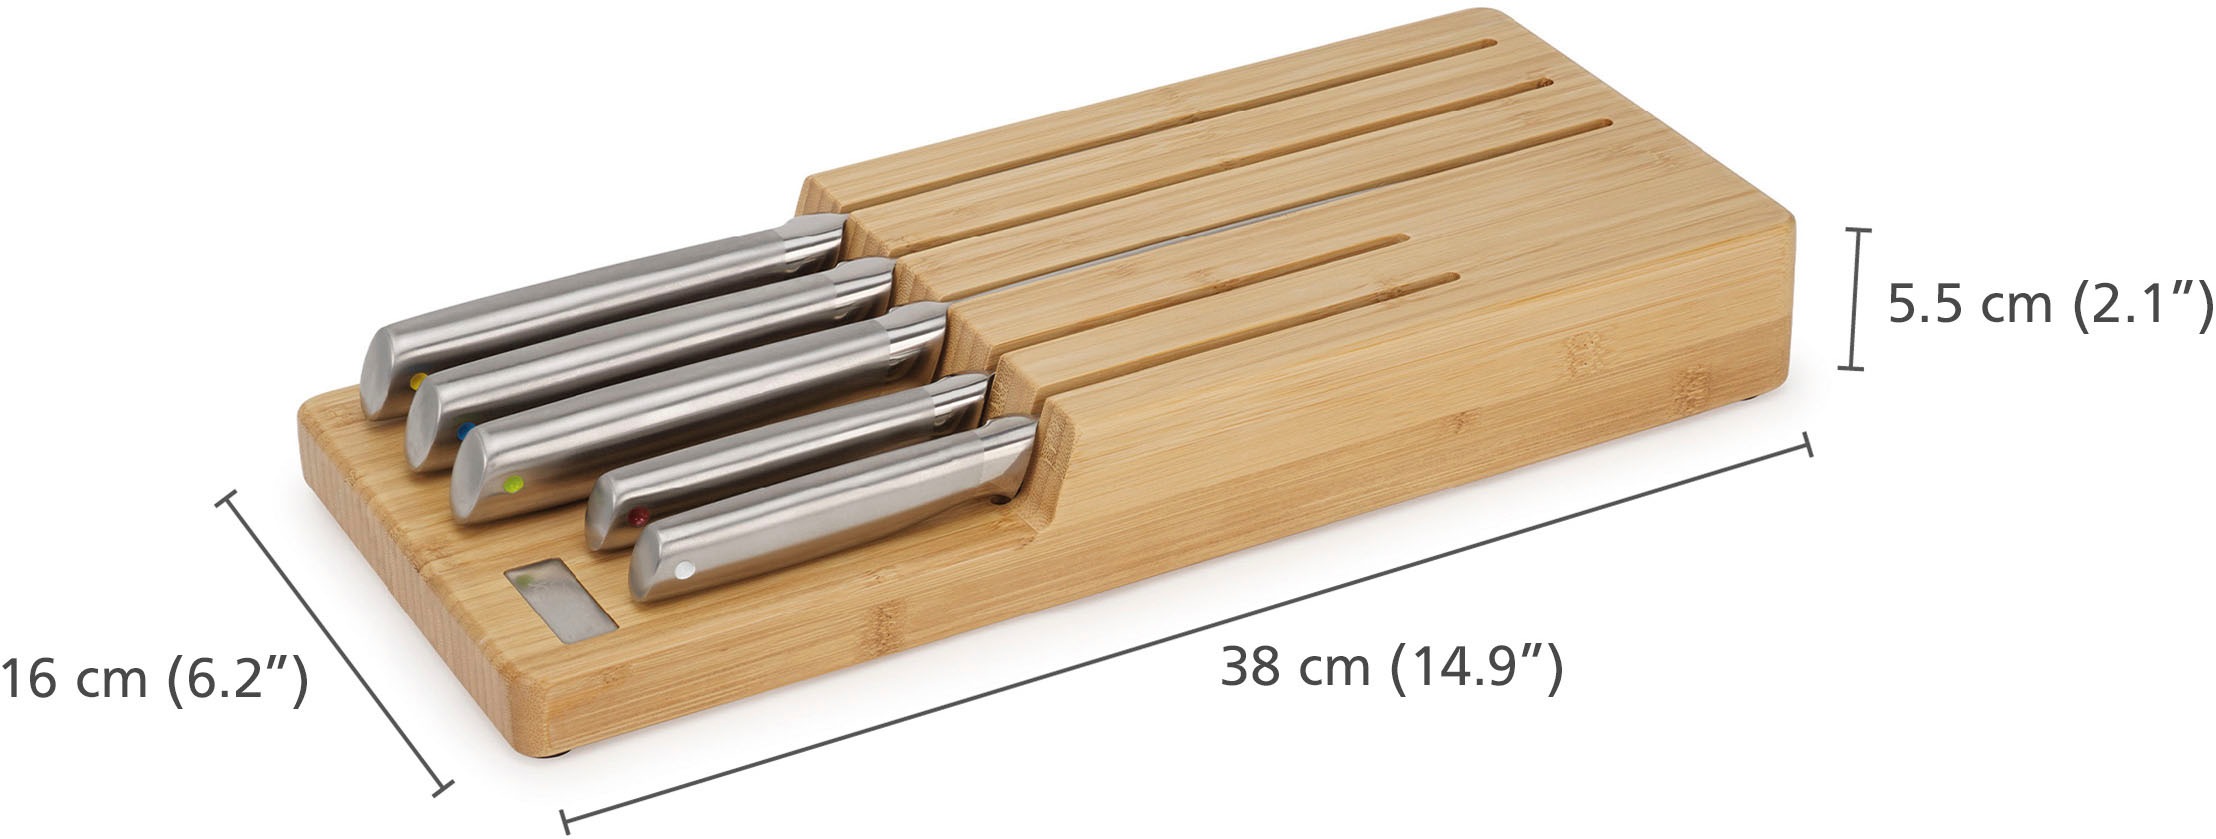 Joseph Joseph Messer-Set »Elevate Steel Knives Bamboo Store«, (6 tlg.), rutschfest, Bambus, japanischer Edelstahl